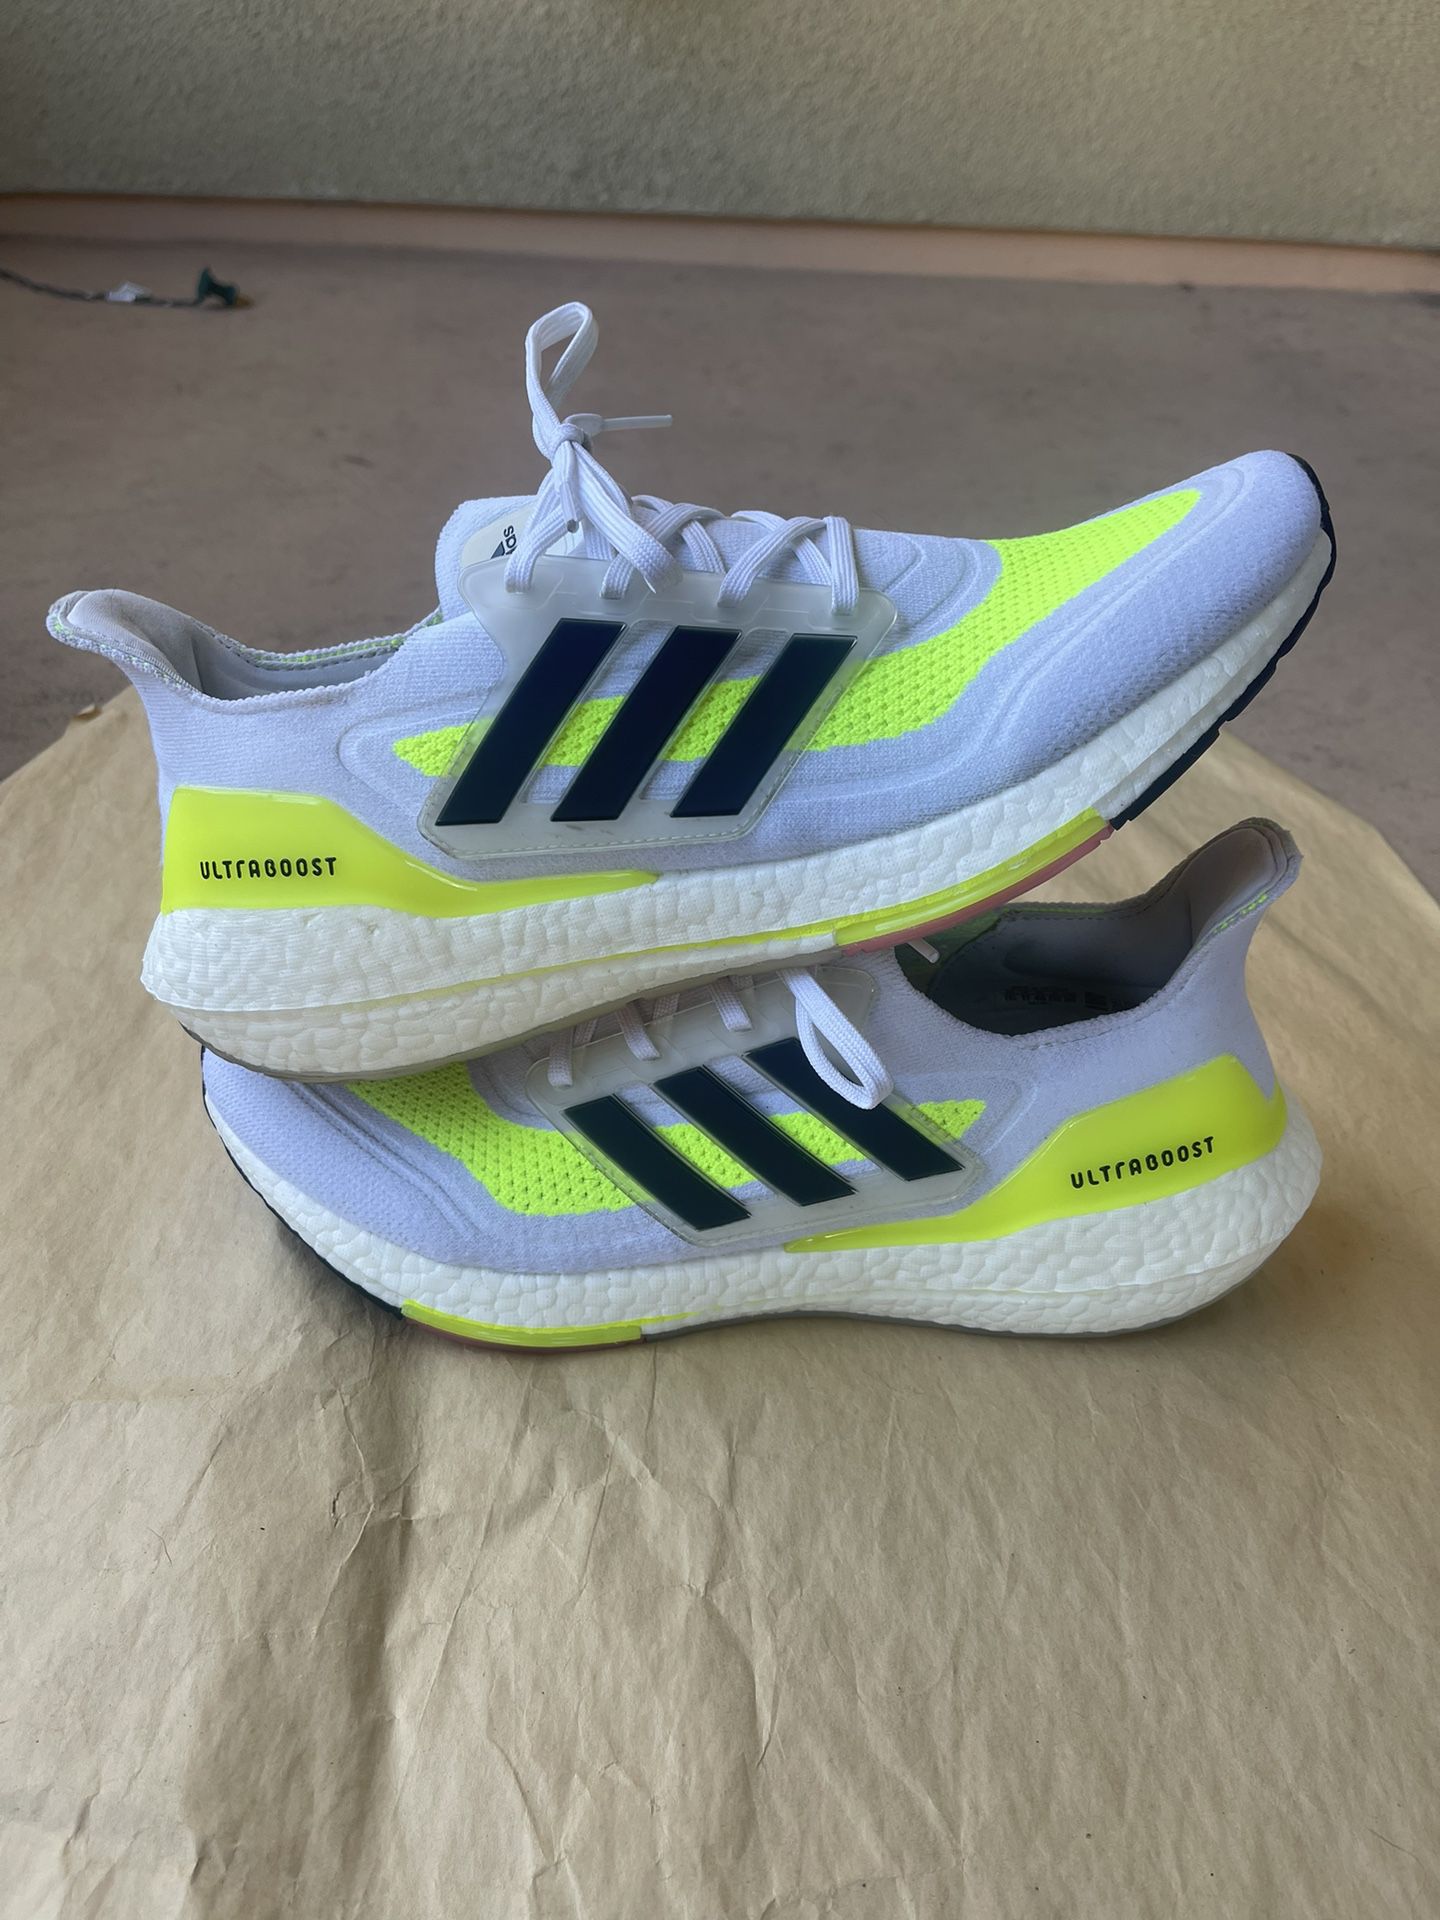 Adidas Ultraboost Solar Green/Black/White- Men’s 11.5